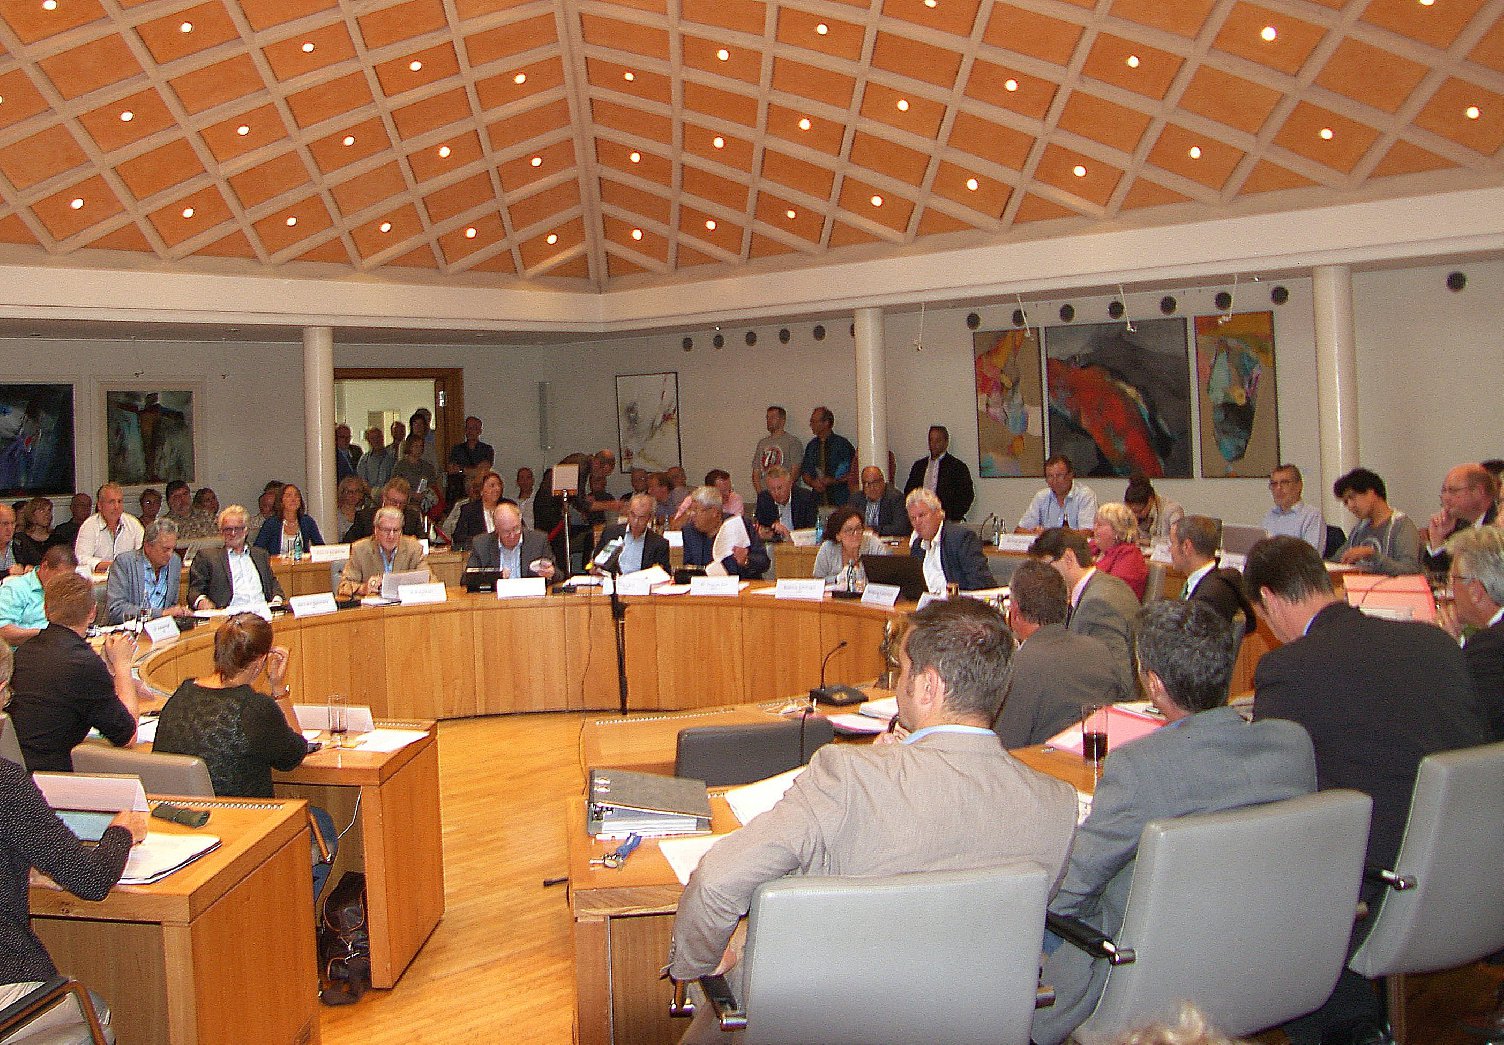 Gut besuchte Stadtratssitzung: Auch die Bürger wollen ein Wörtchen mitreden können. Foto: Pfalz-Express/Ahme